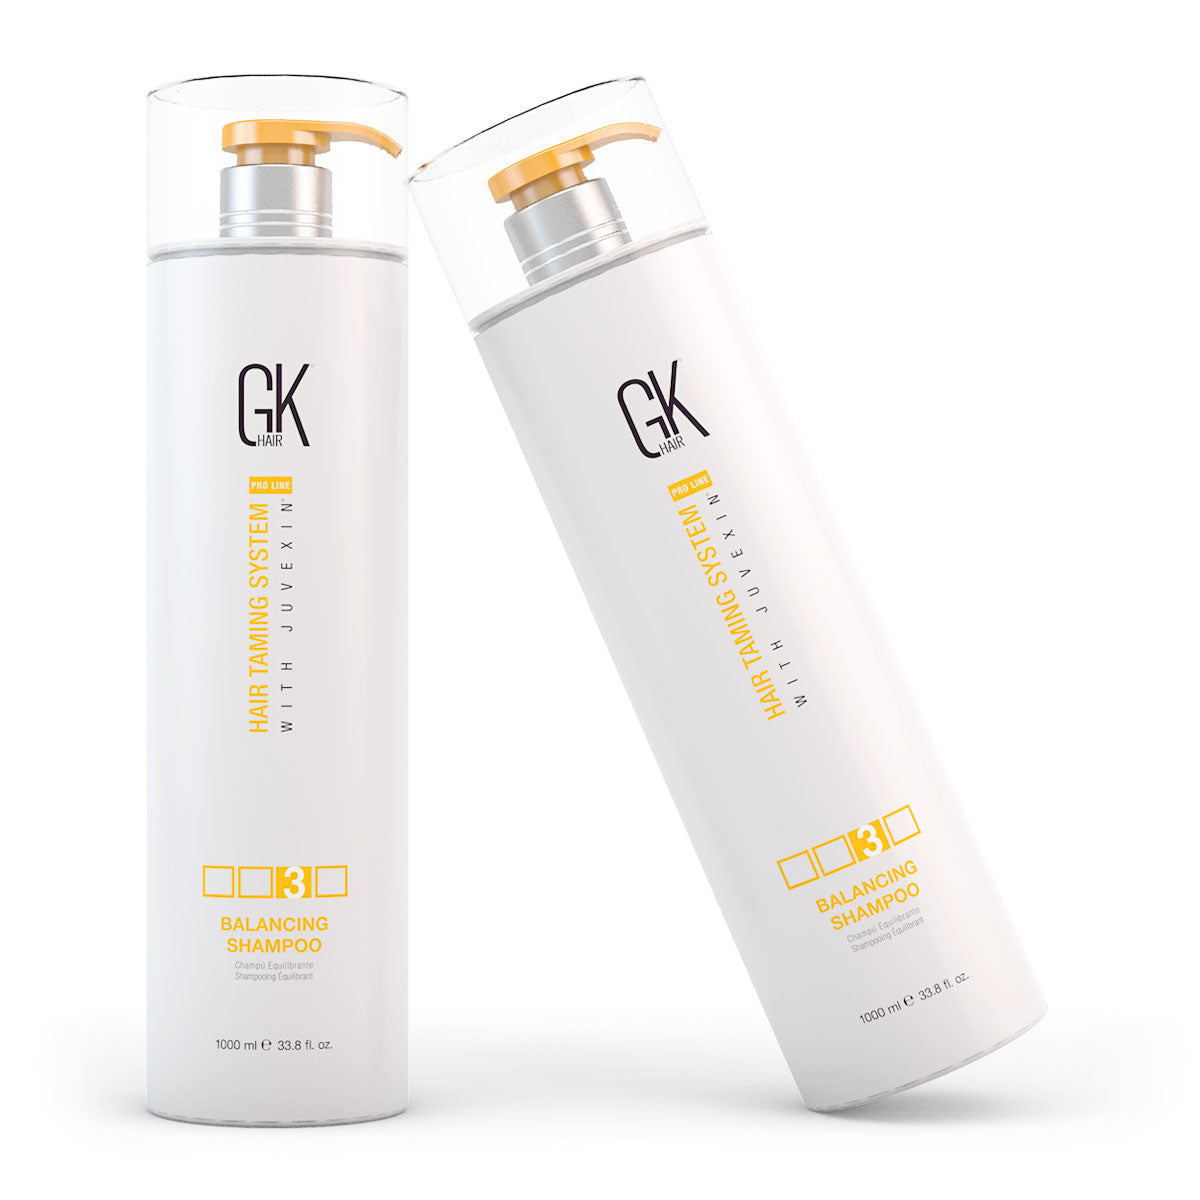 GKhair Balancing Shampoo